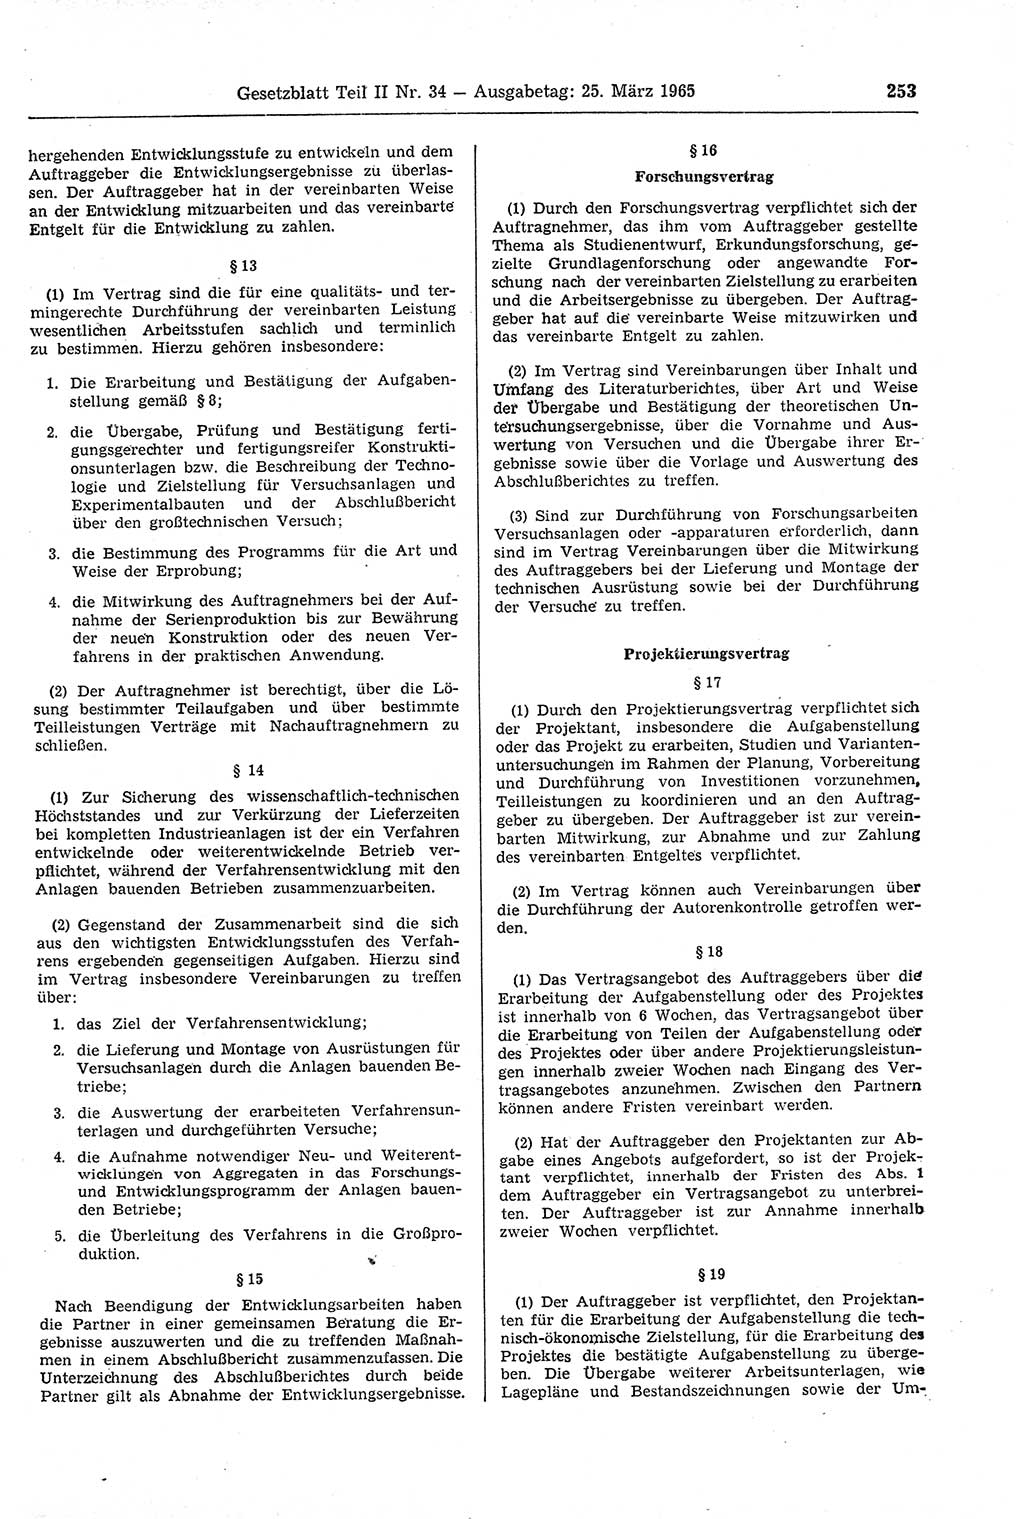 Gesetzblatt (GBl.) der Deutschen Demokratischen Republik (DDR) Teil ⅠⅠ 1965, Seite 253 (GBl. DDR ⅠⅠ 1965, S. 253)